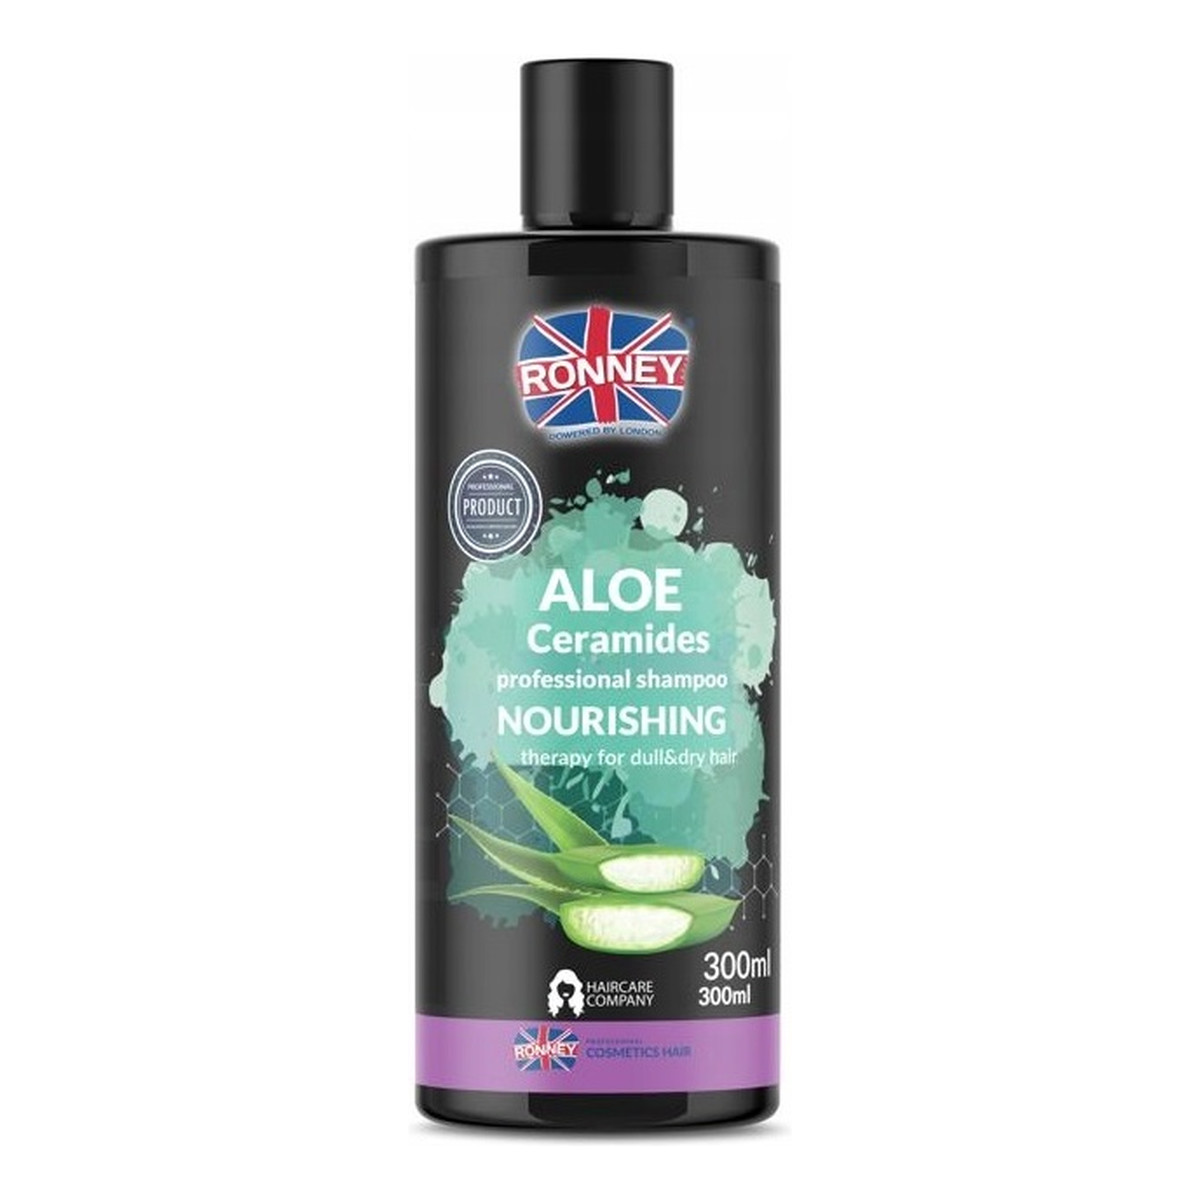 Ronney Aloe ceramides professional shampoo nourishing nawilżający szampon do włosów suchych i matowych 300ml